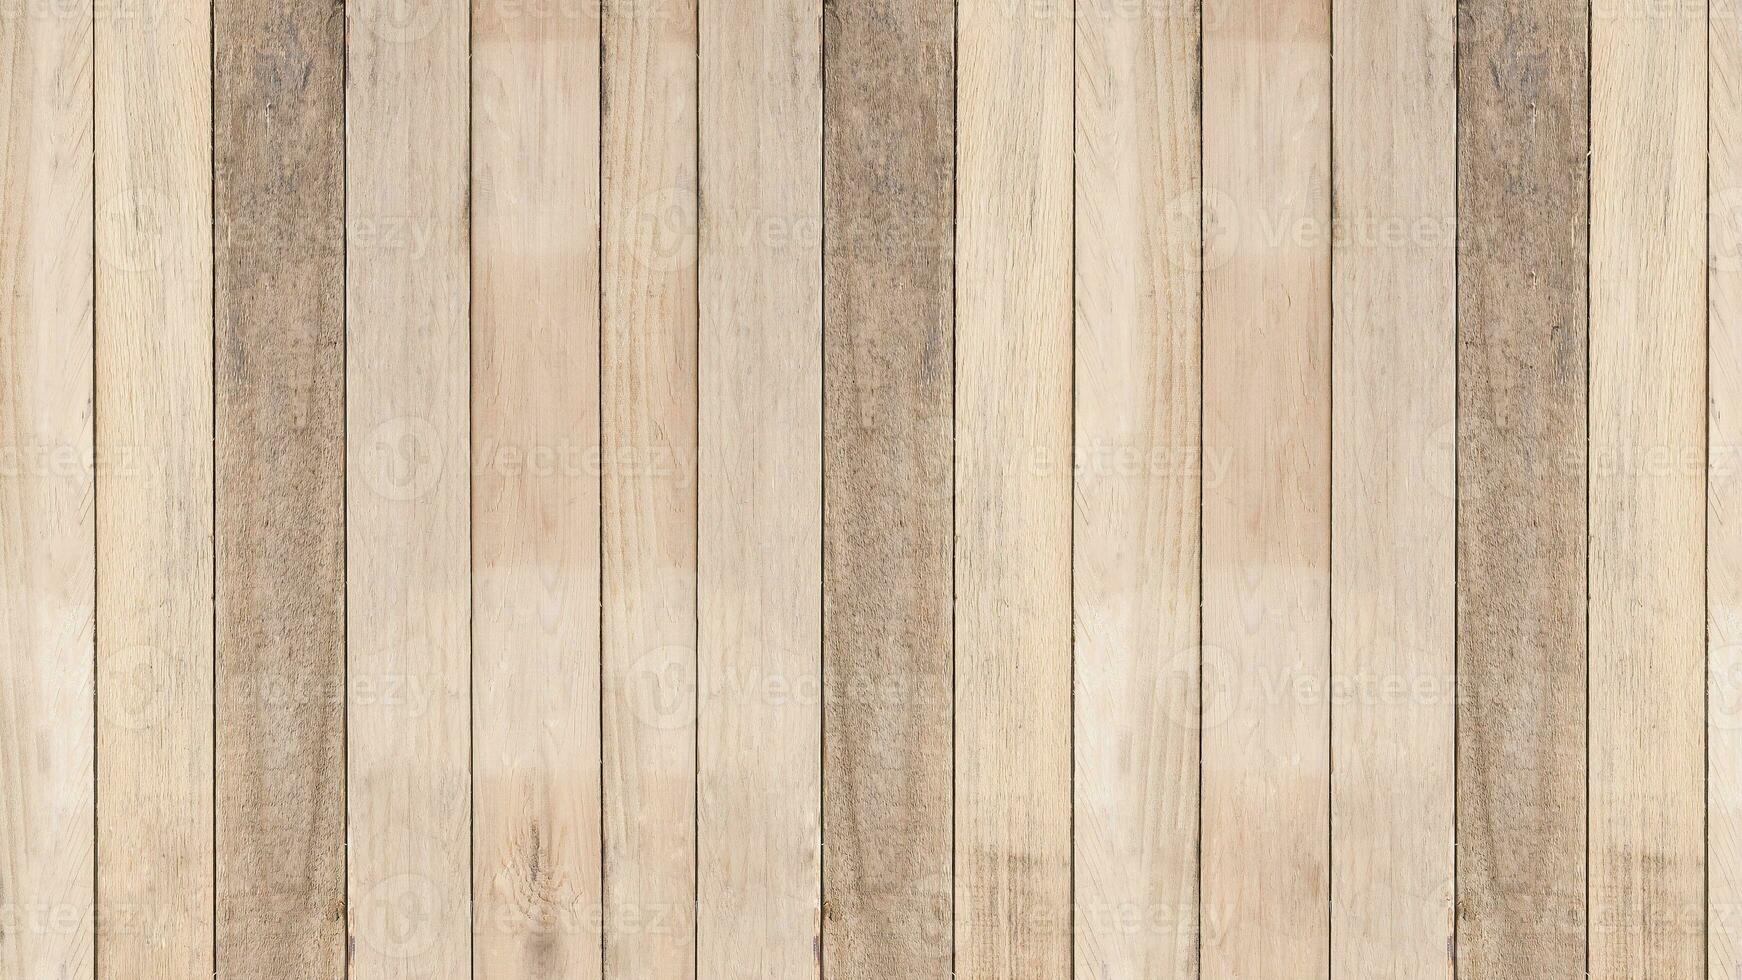 natural estampado madeira. velho, grunge de madeira painel usava Como fundo, velho madeira prancha parede fundo, desatado madeira chão, madeira chão. foto